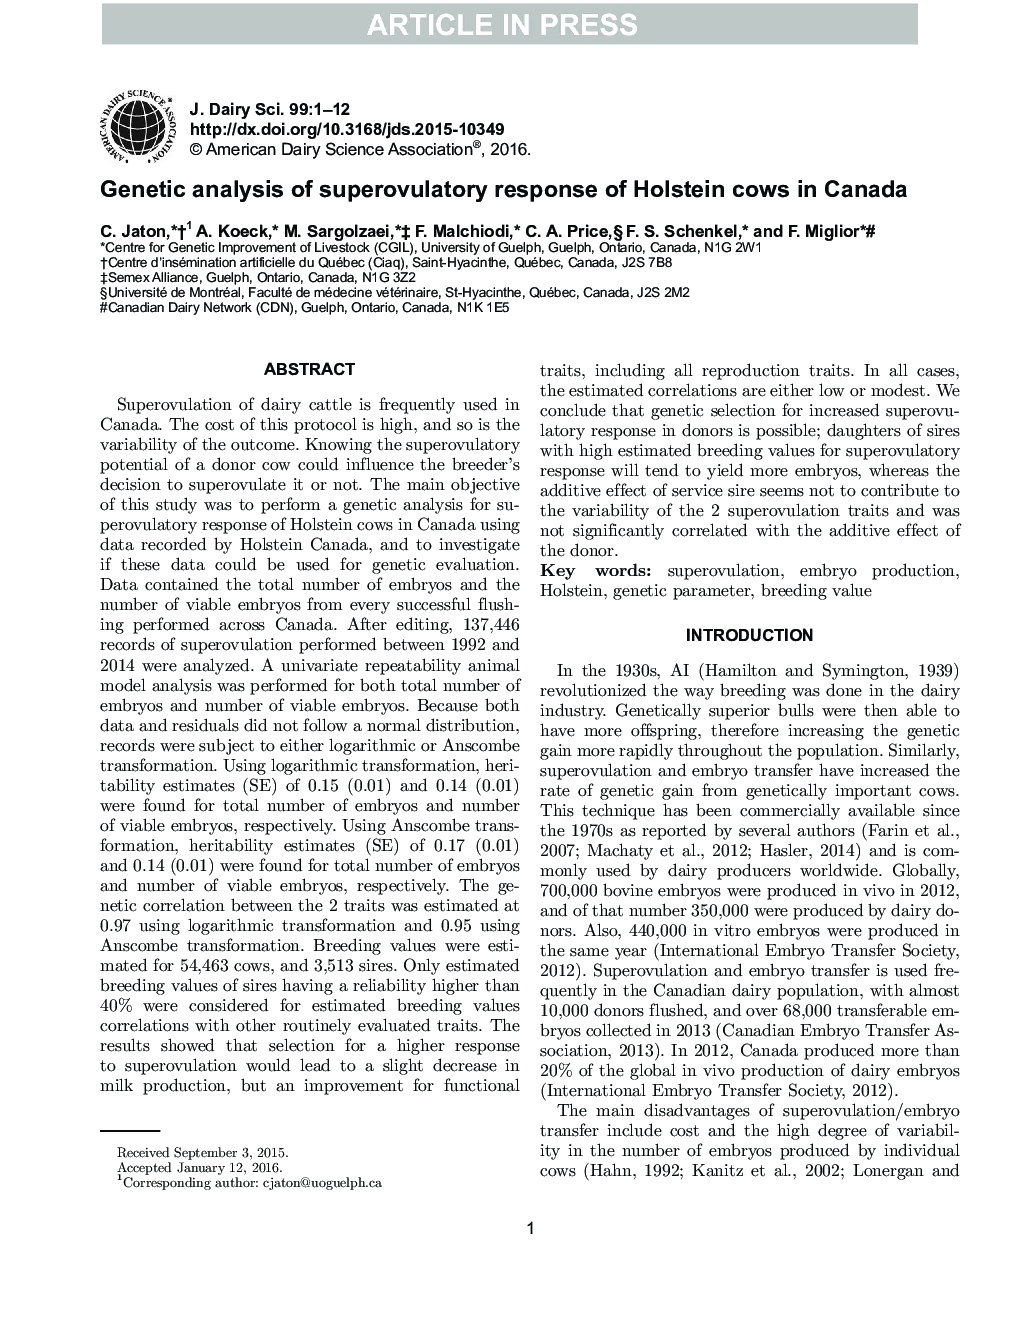 تجزیه و تحلیل ژنتیکی پاسخ سوپرولوویتی گاوهای هلشتاین در کانادا 